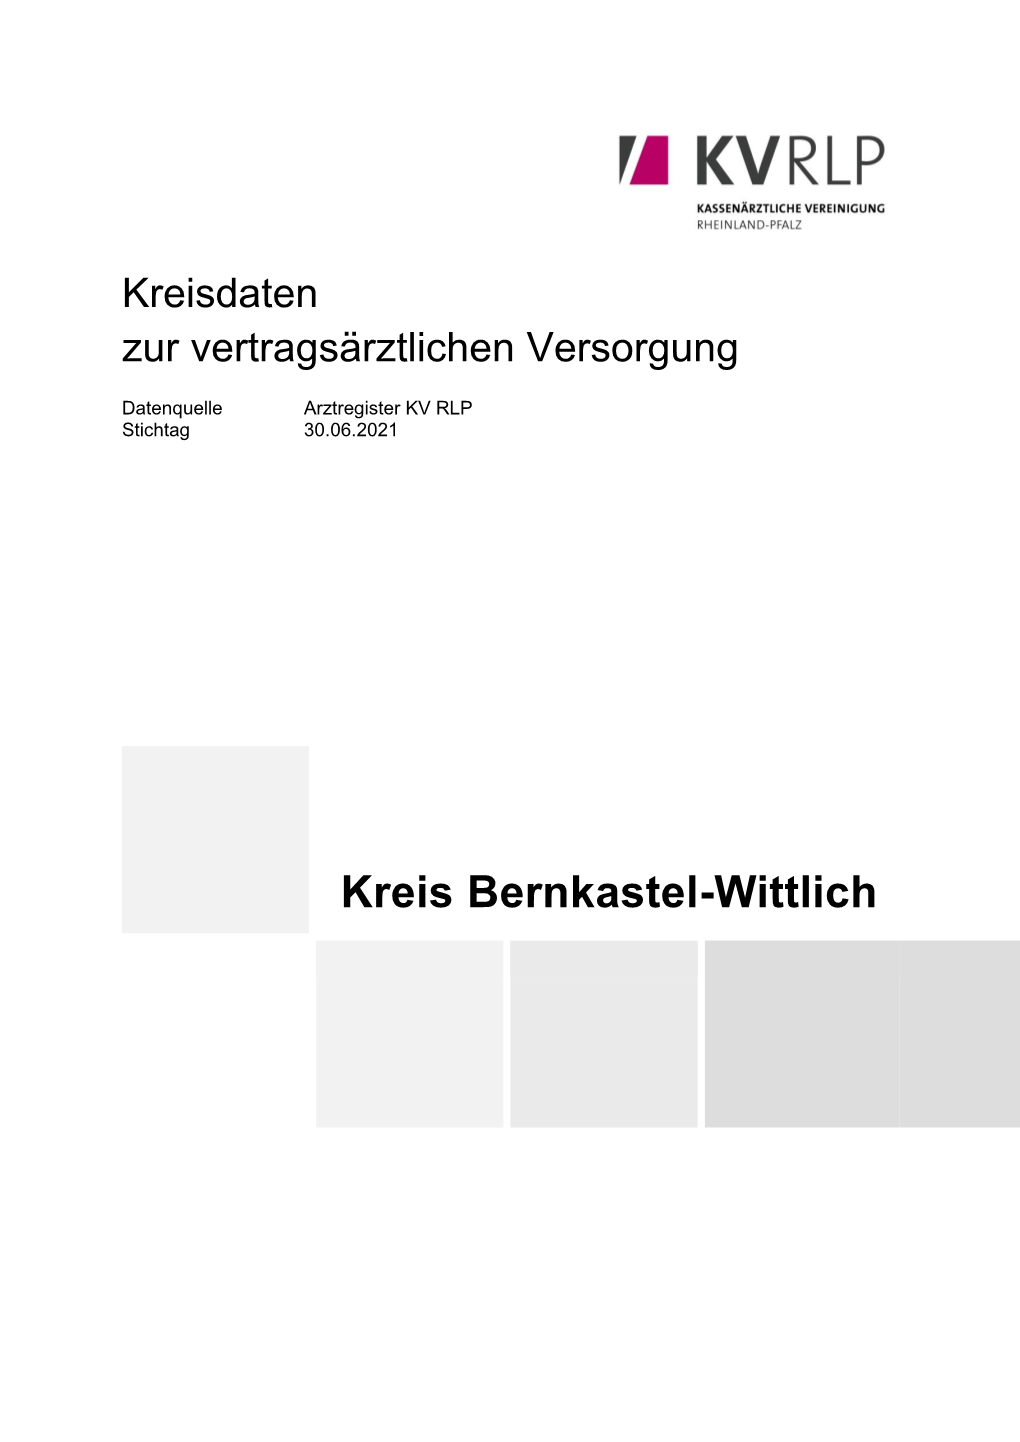 Kreis Bernkastel-Wittlich